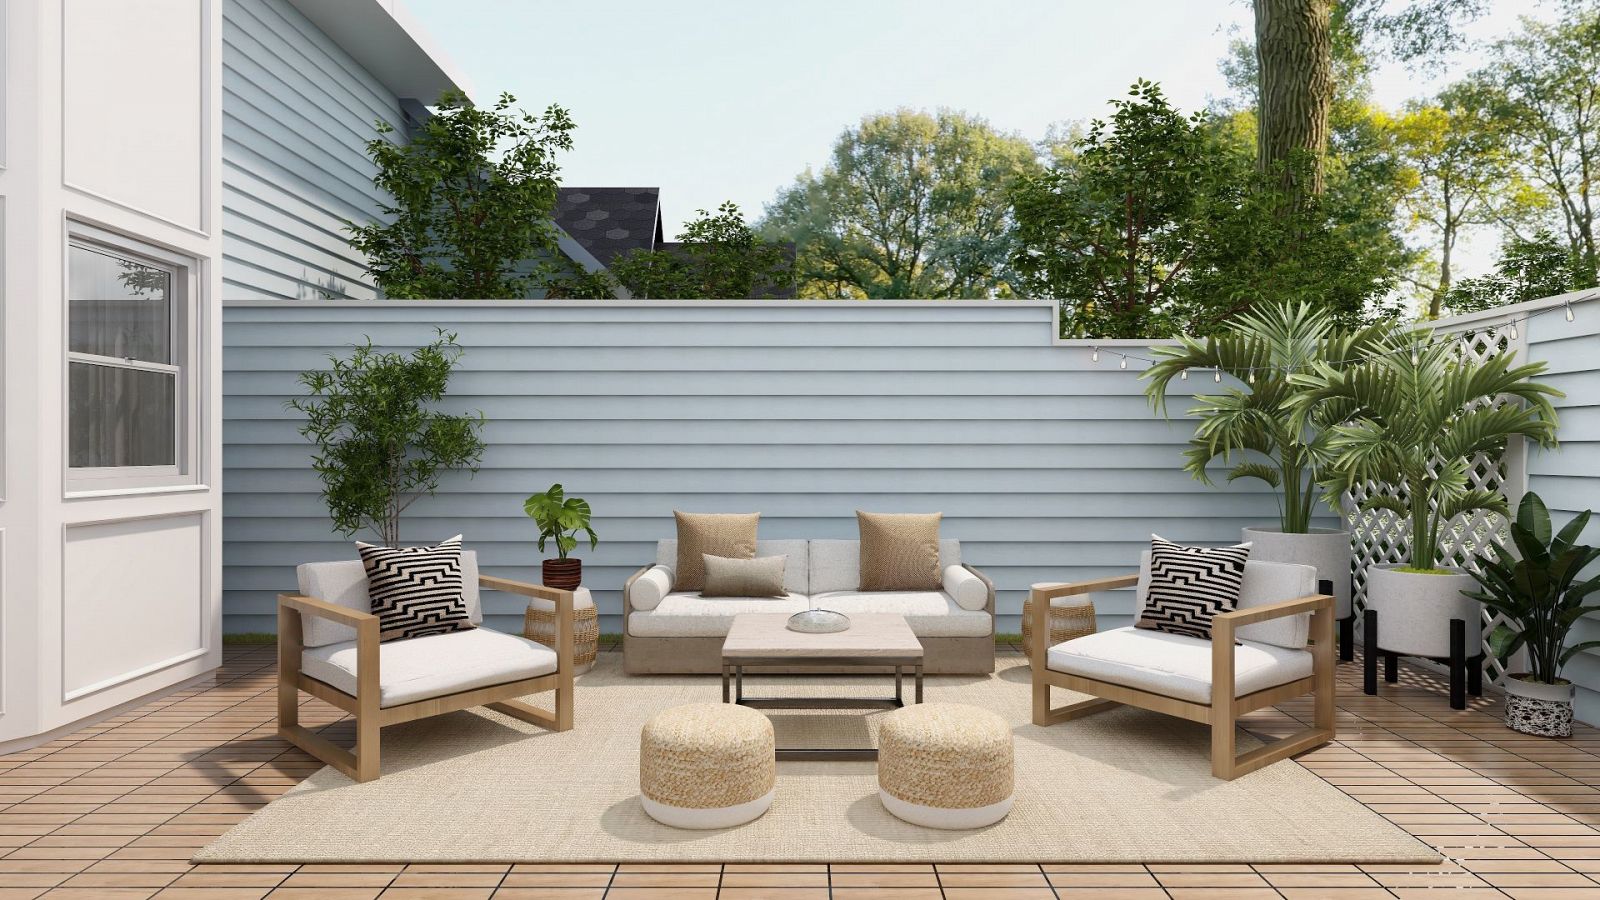 Ideas para organizar tu jardín o terraza